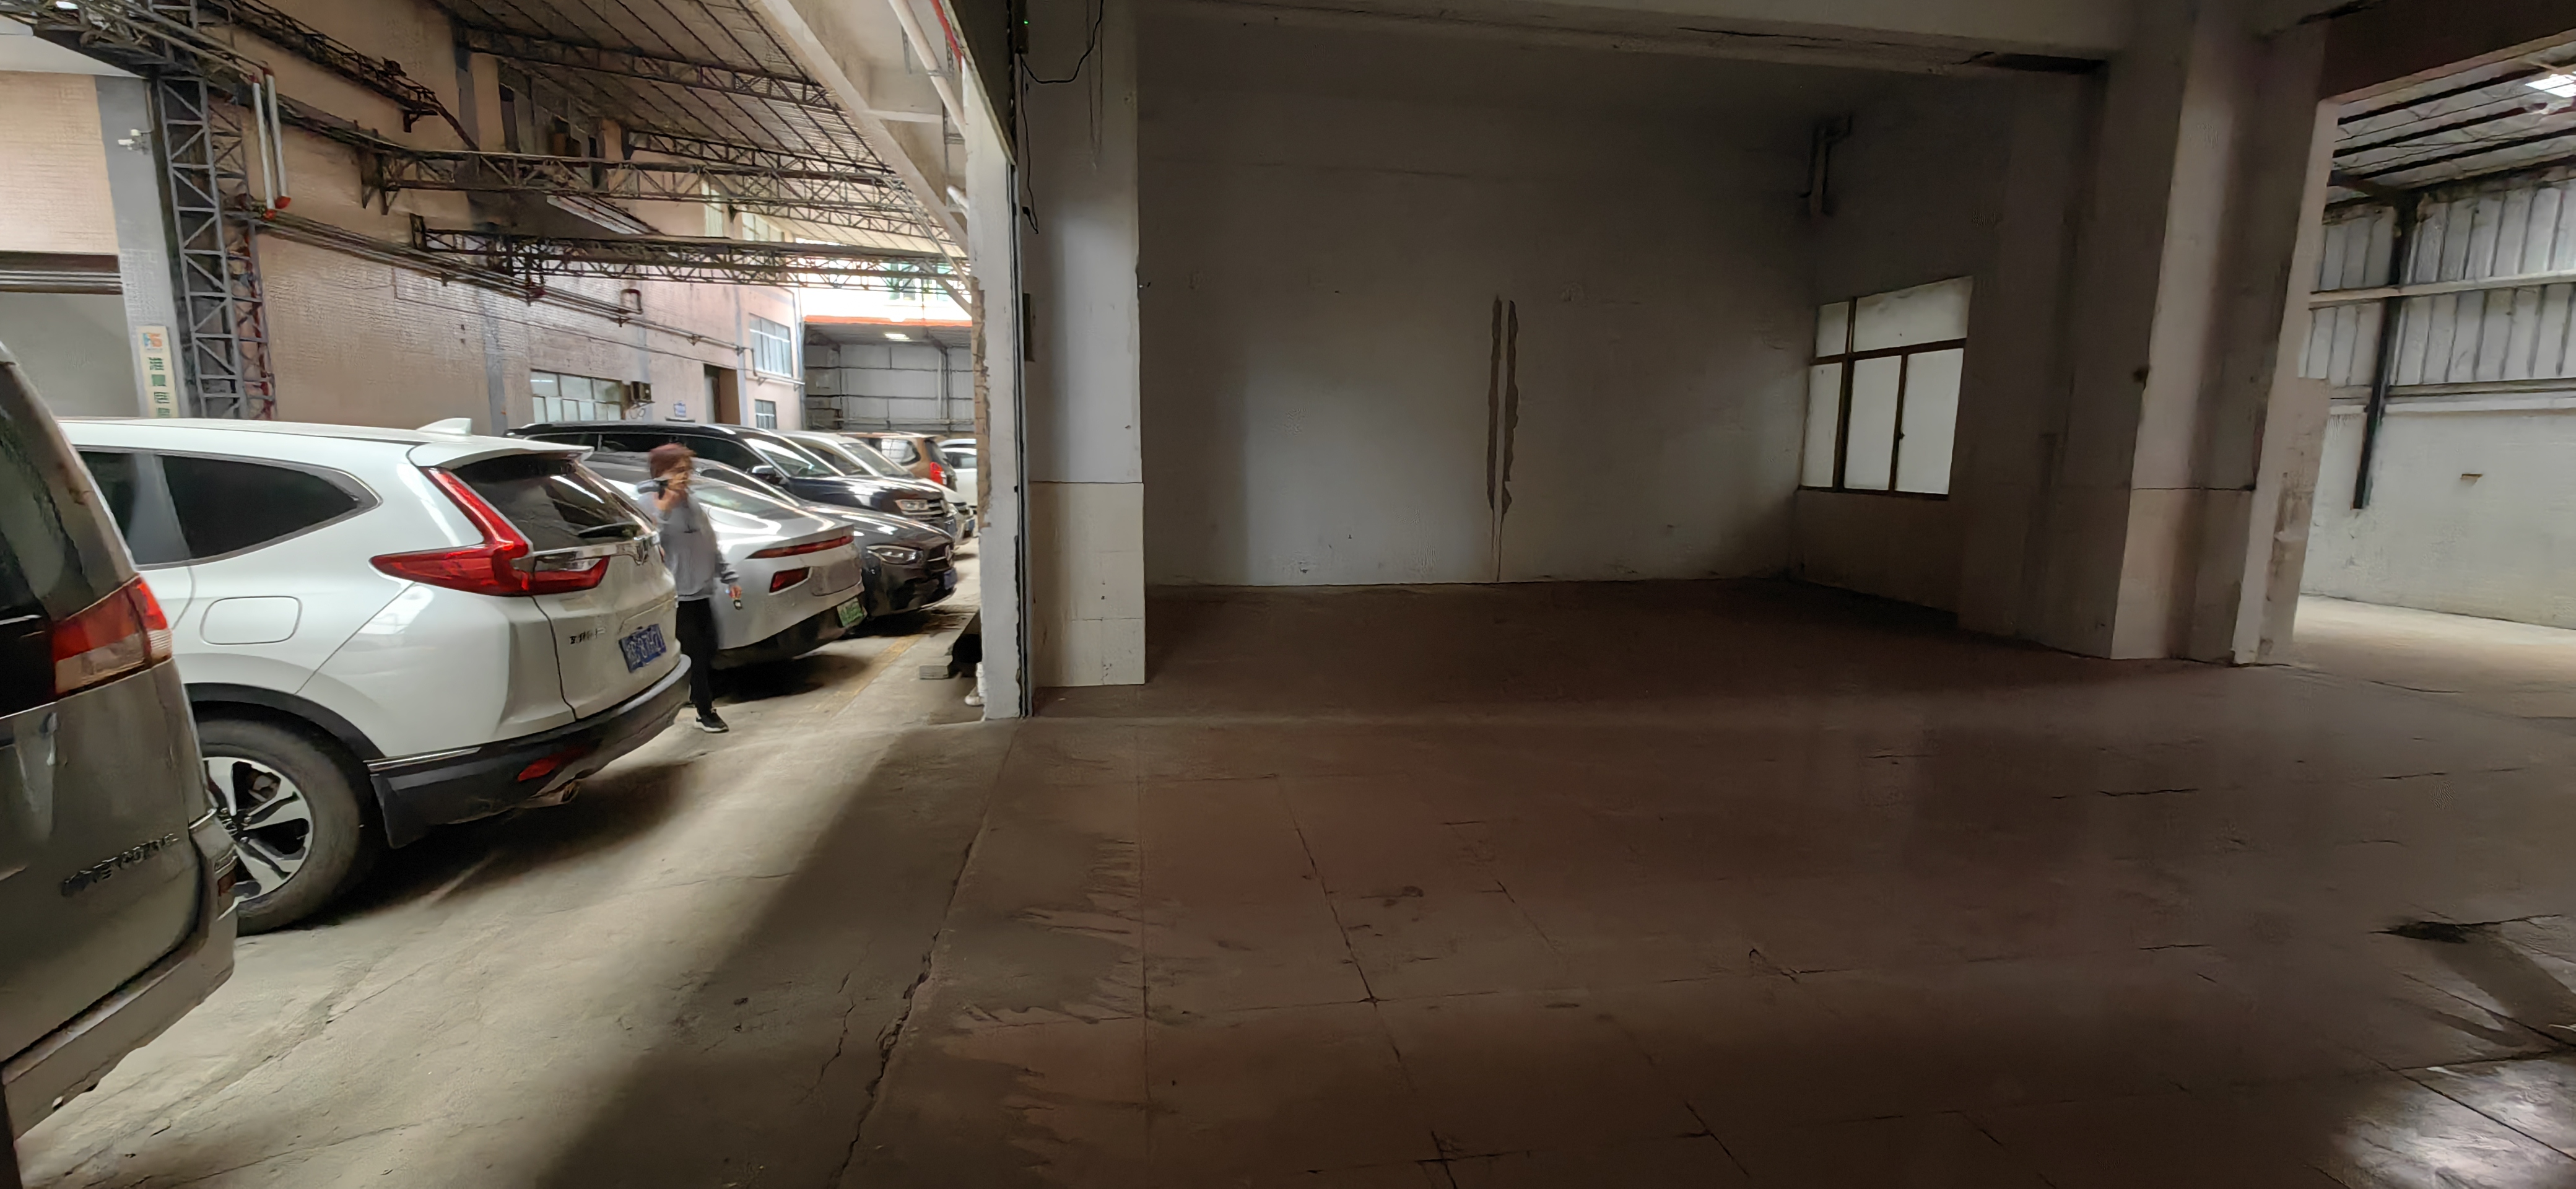 新塘镇夏埔工业区一楼小面积厂房仓库出租208平米